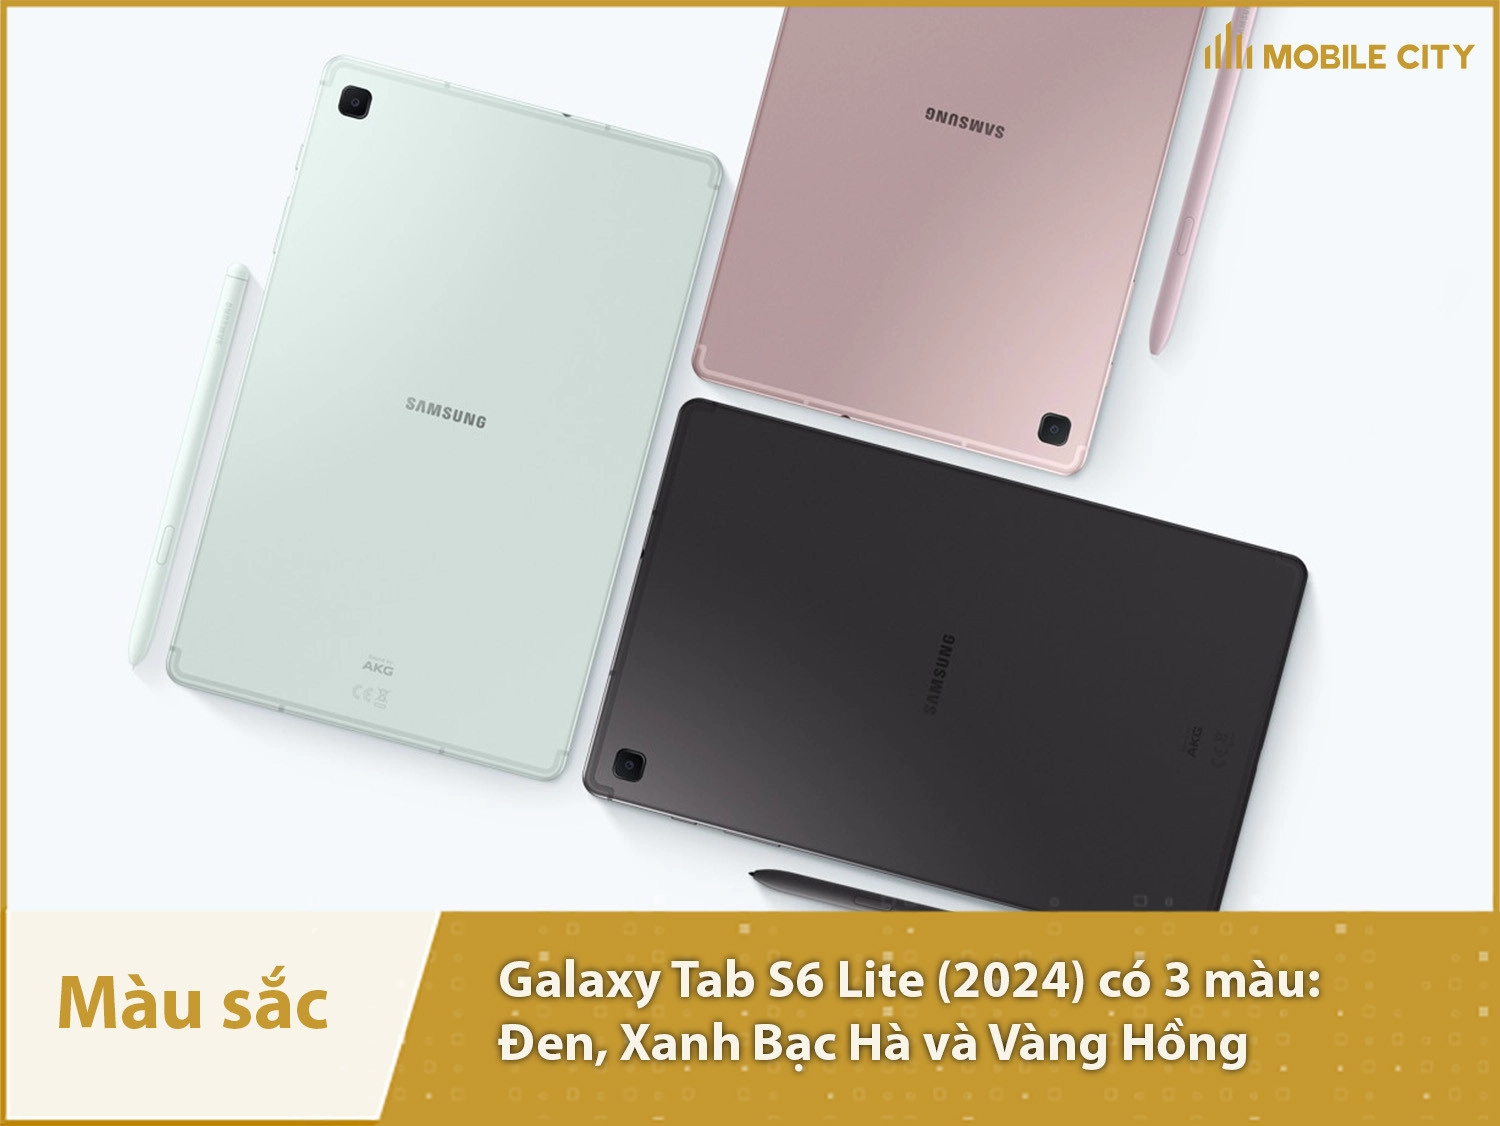 Màu sắc Samsung Galaxy Tab S6 Lite (2024): Đen, Xanh Bạc Hà và Vàng Hồng